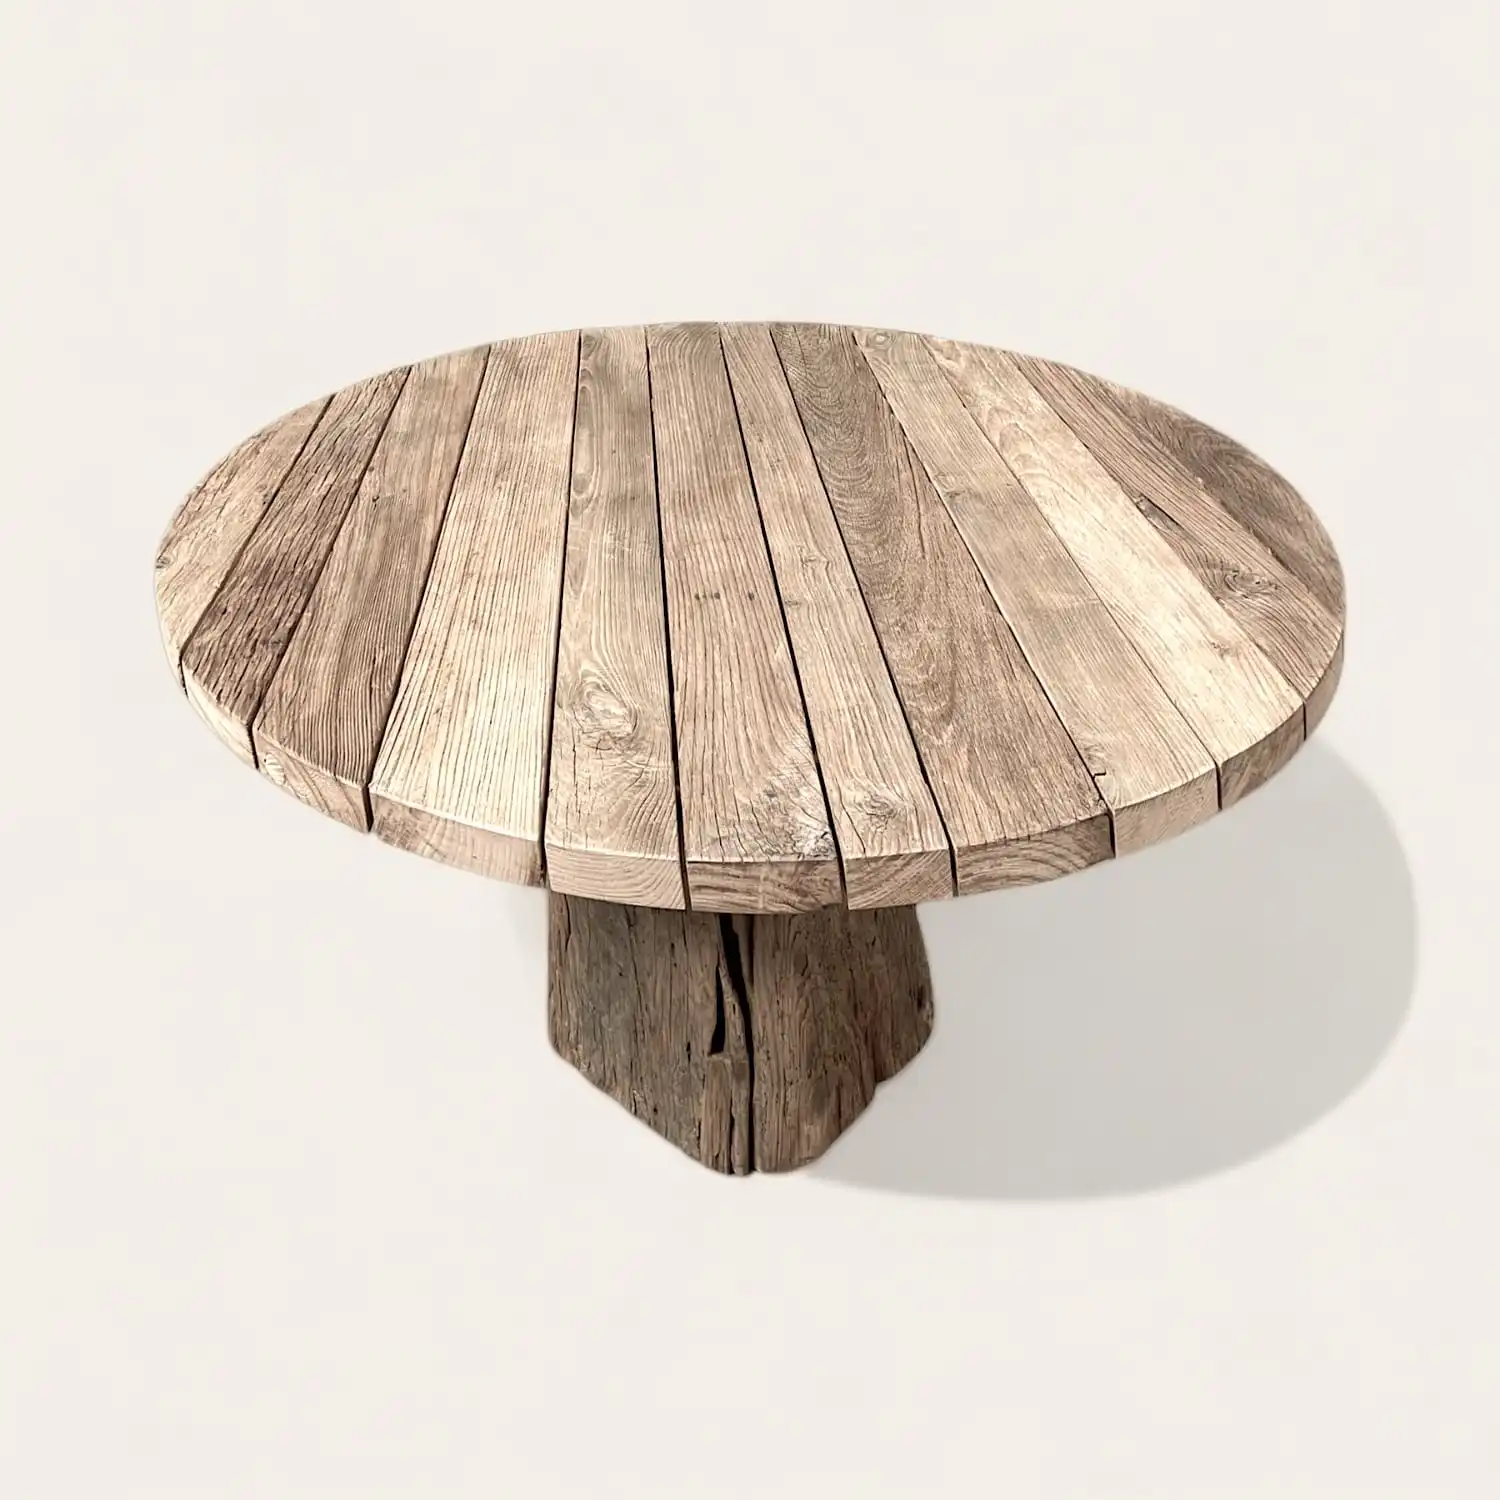  Une table ronde en bois rustique sur fond blanc. 